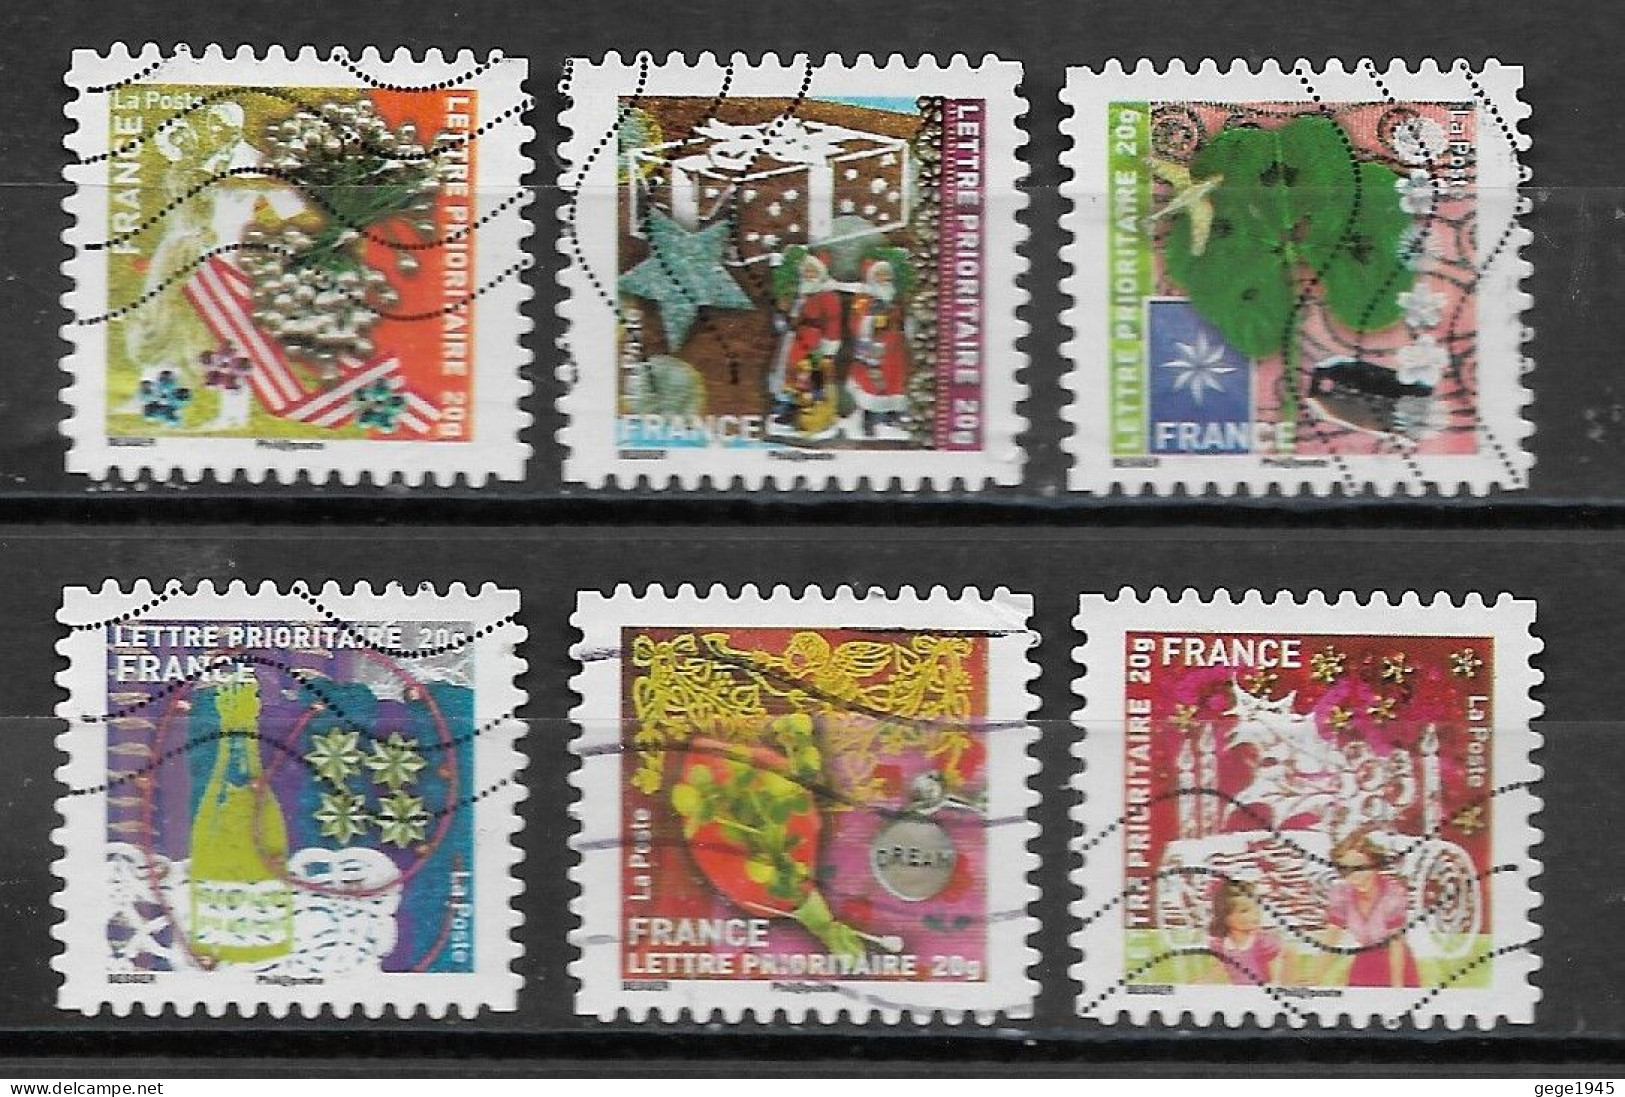 France 2010 Oblitéré Autoadhésif  N° 496 - 497 - 500 - 501 - 502 - 504   "  Meilleurs Voeux  " - Used Stamps